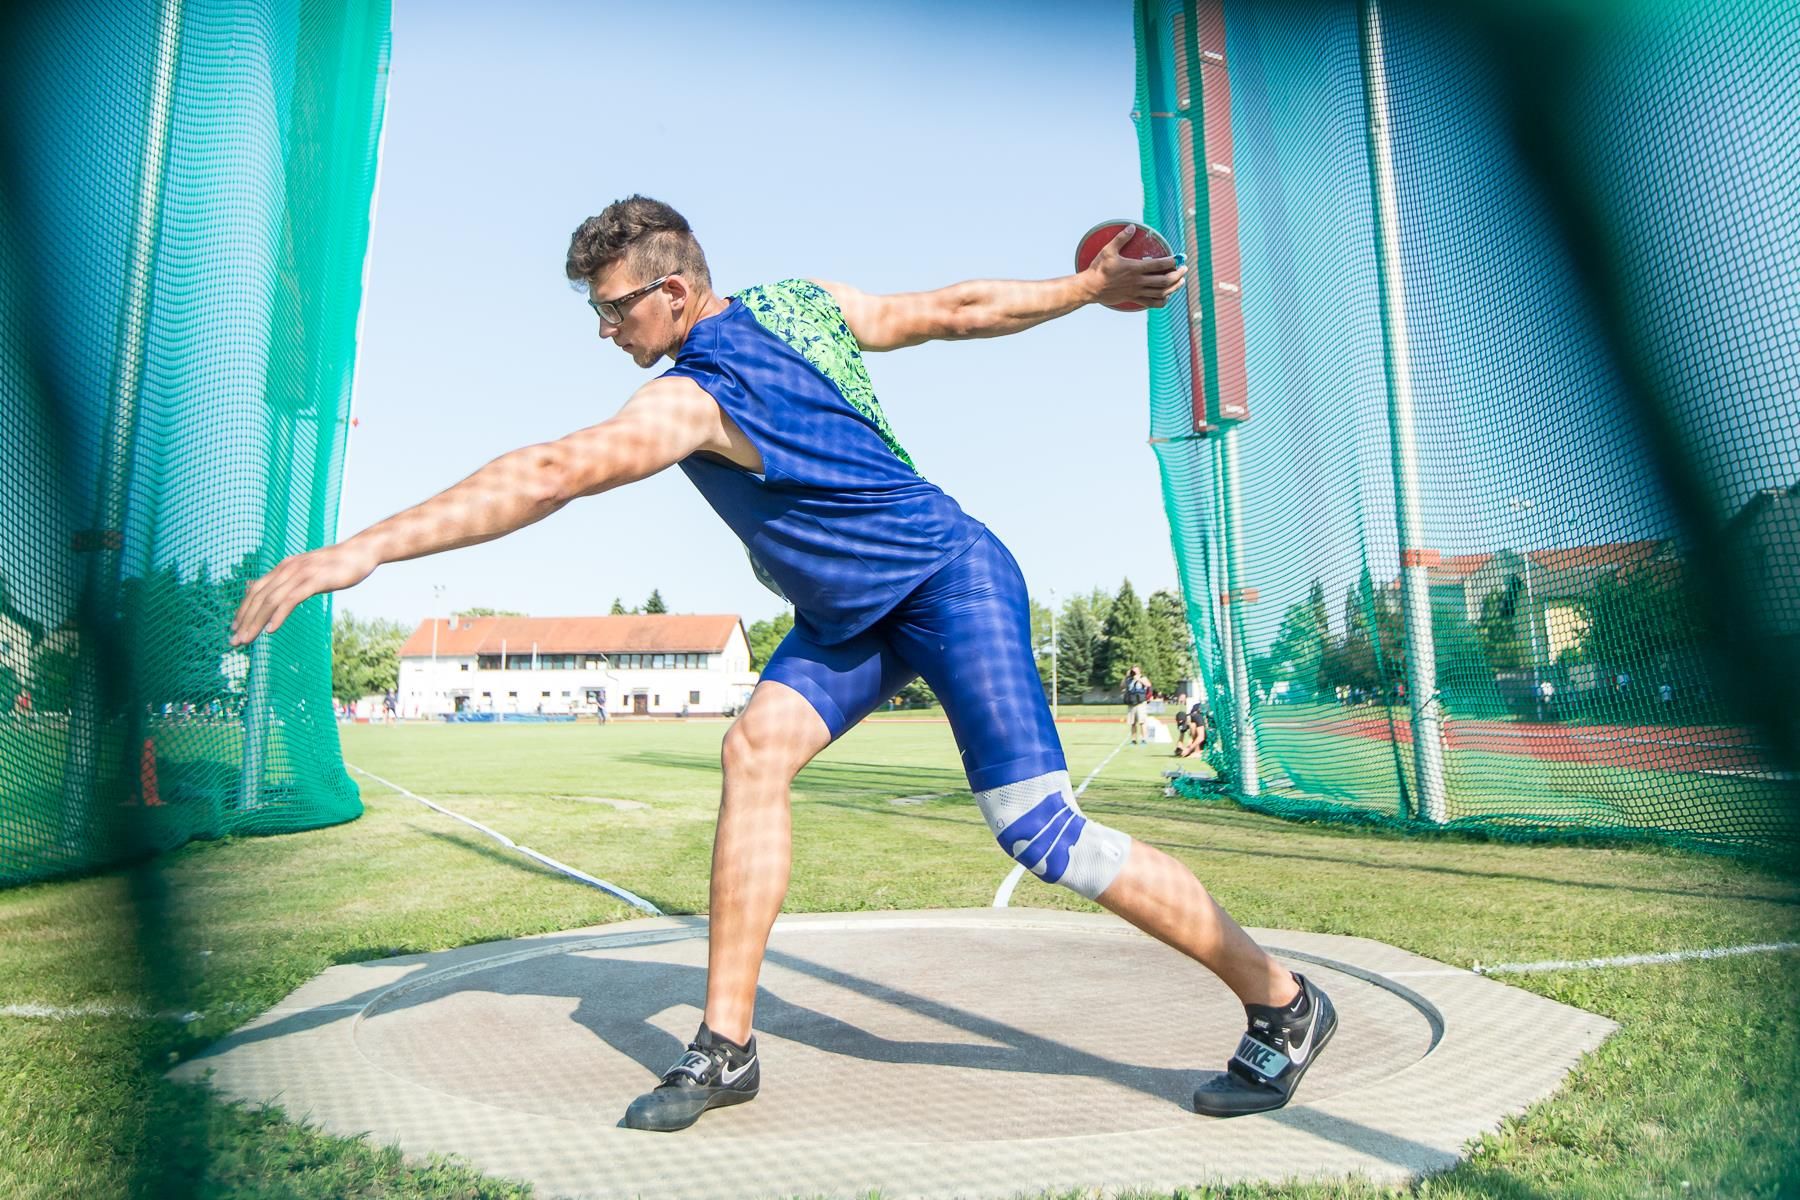 Slovenian discus thrower Kristjan Ceh